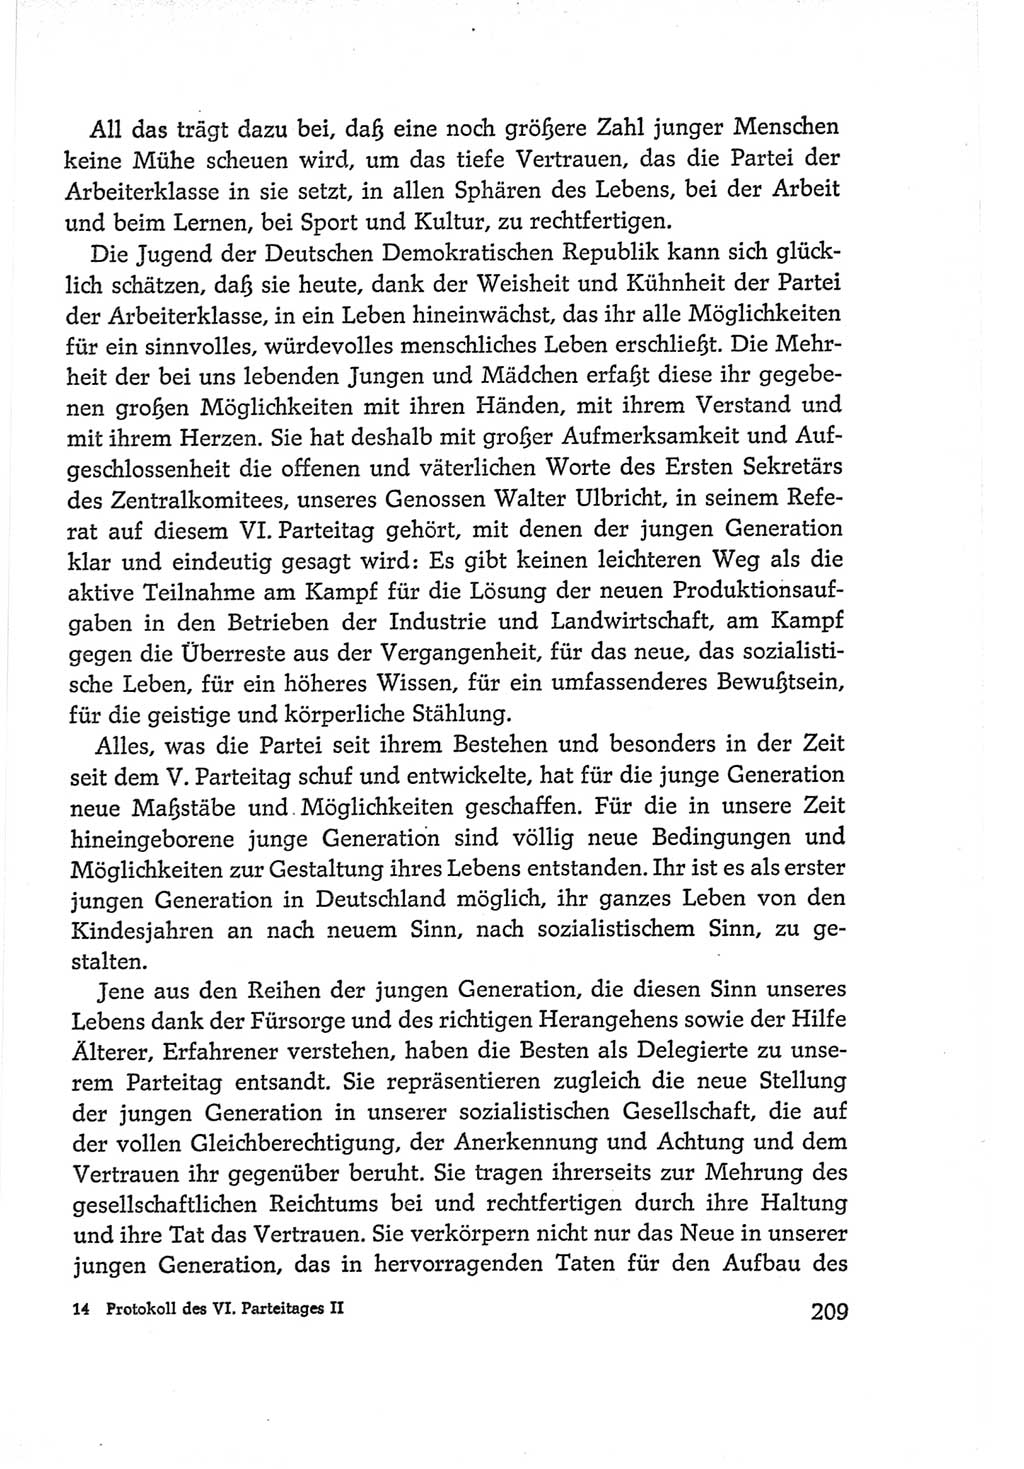 Protokoll der Verhandlungen des Ⅵ. Parteitages der Sozialistischen Einheitspartei Deutschlands (SED) [Deutsche Demokratische Republik (DDR)] 1963, Band Ⅱ, Seite 209 (Prot. Verh. Ⅵ. PT SED DDR 1963, Bd. Ⅱ, S. 209)